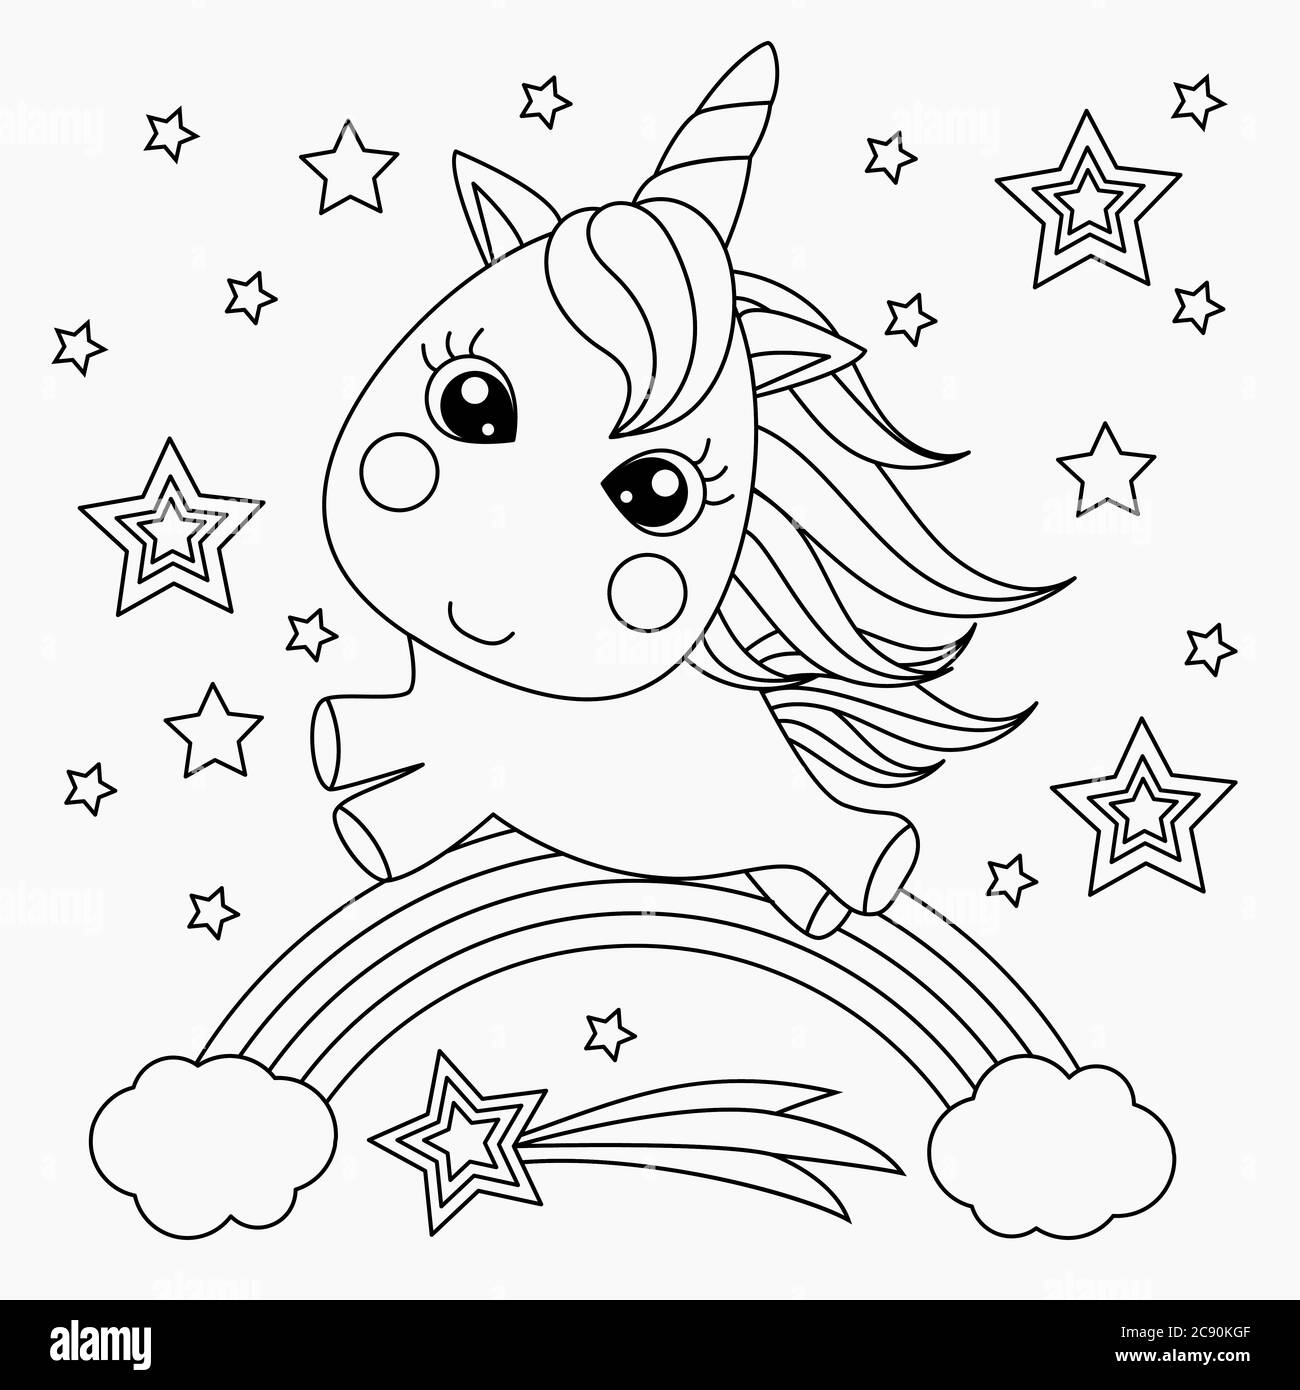 Unicorno piccolo su un arcobaleno. Animale fantastico. Design per bambini. Illustrazioni in bianco e nero per colorare, stampare, poster. Immagine vettoriale Illustrazione Vettoriale